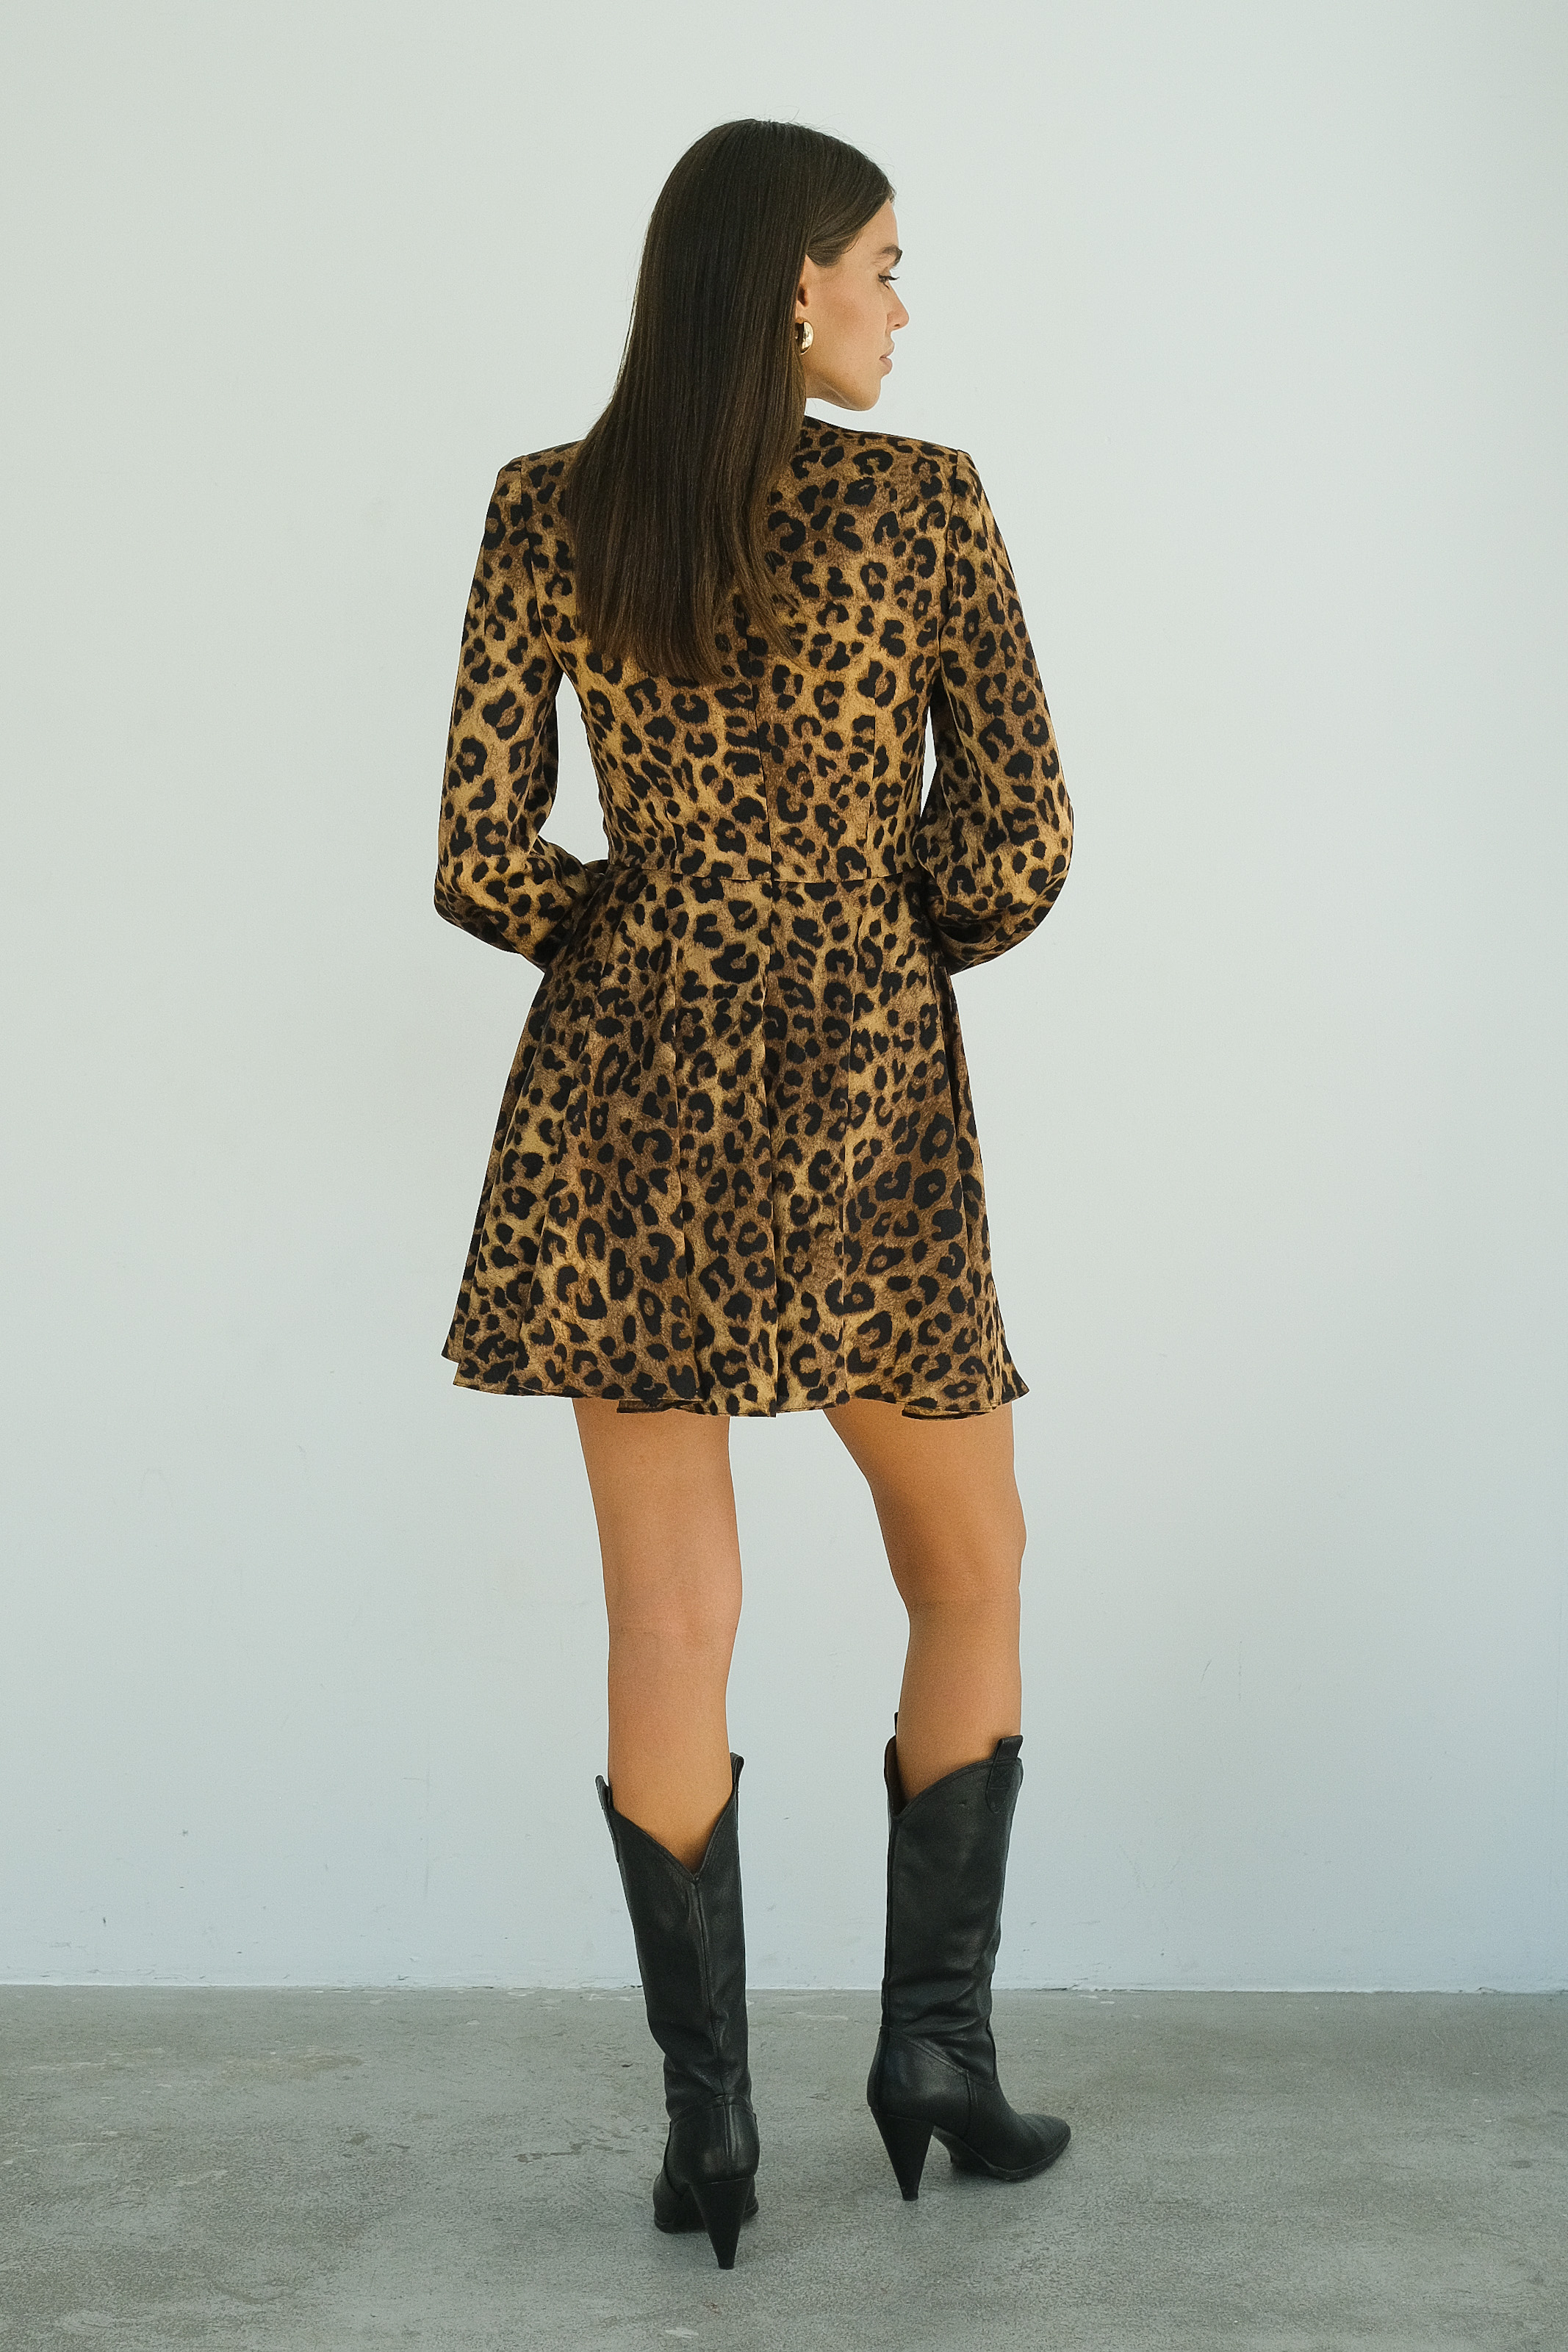 Платье мини леопардовое